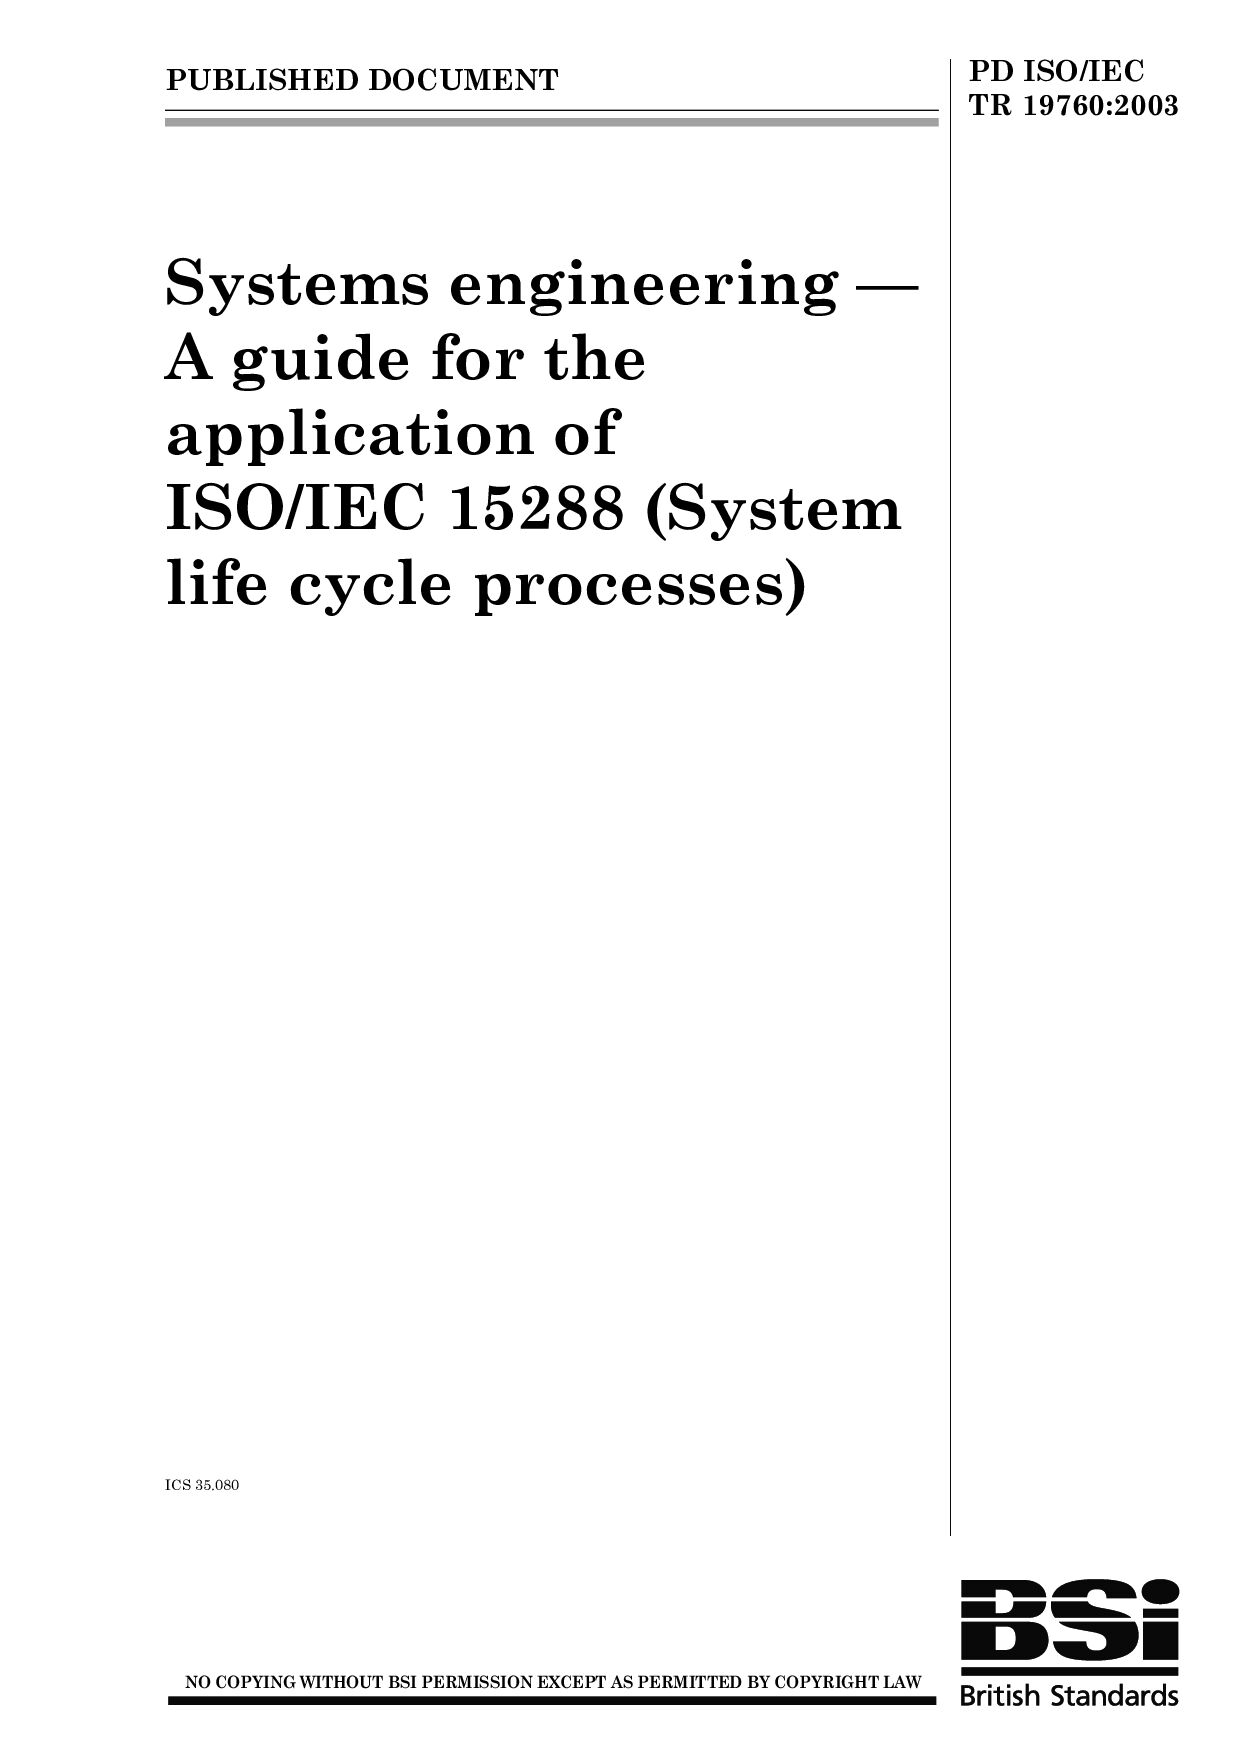 PD ISO/IEC TR 19760:2003封面图